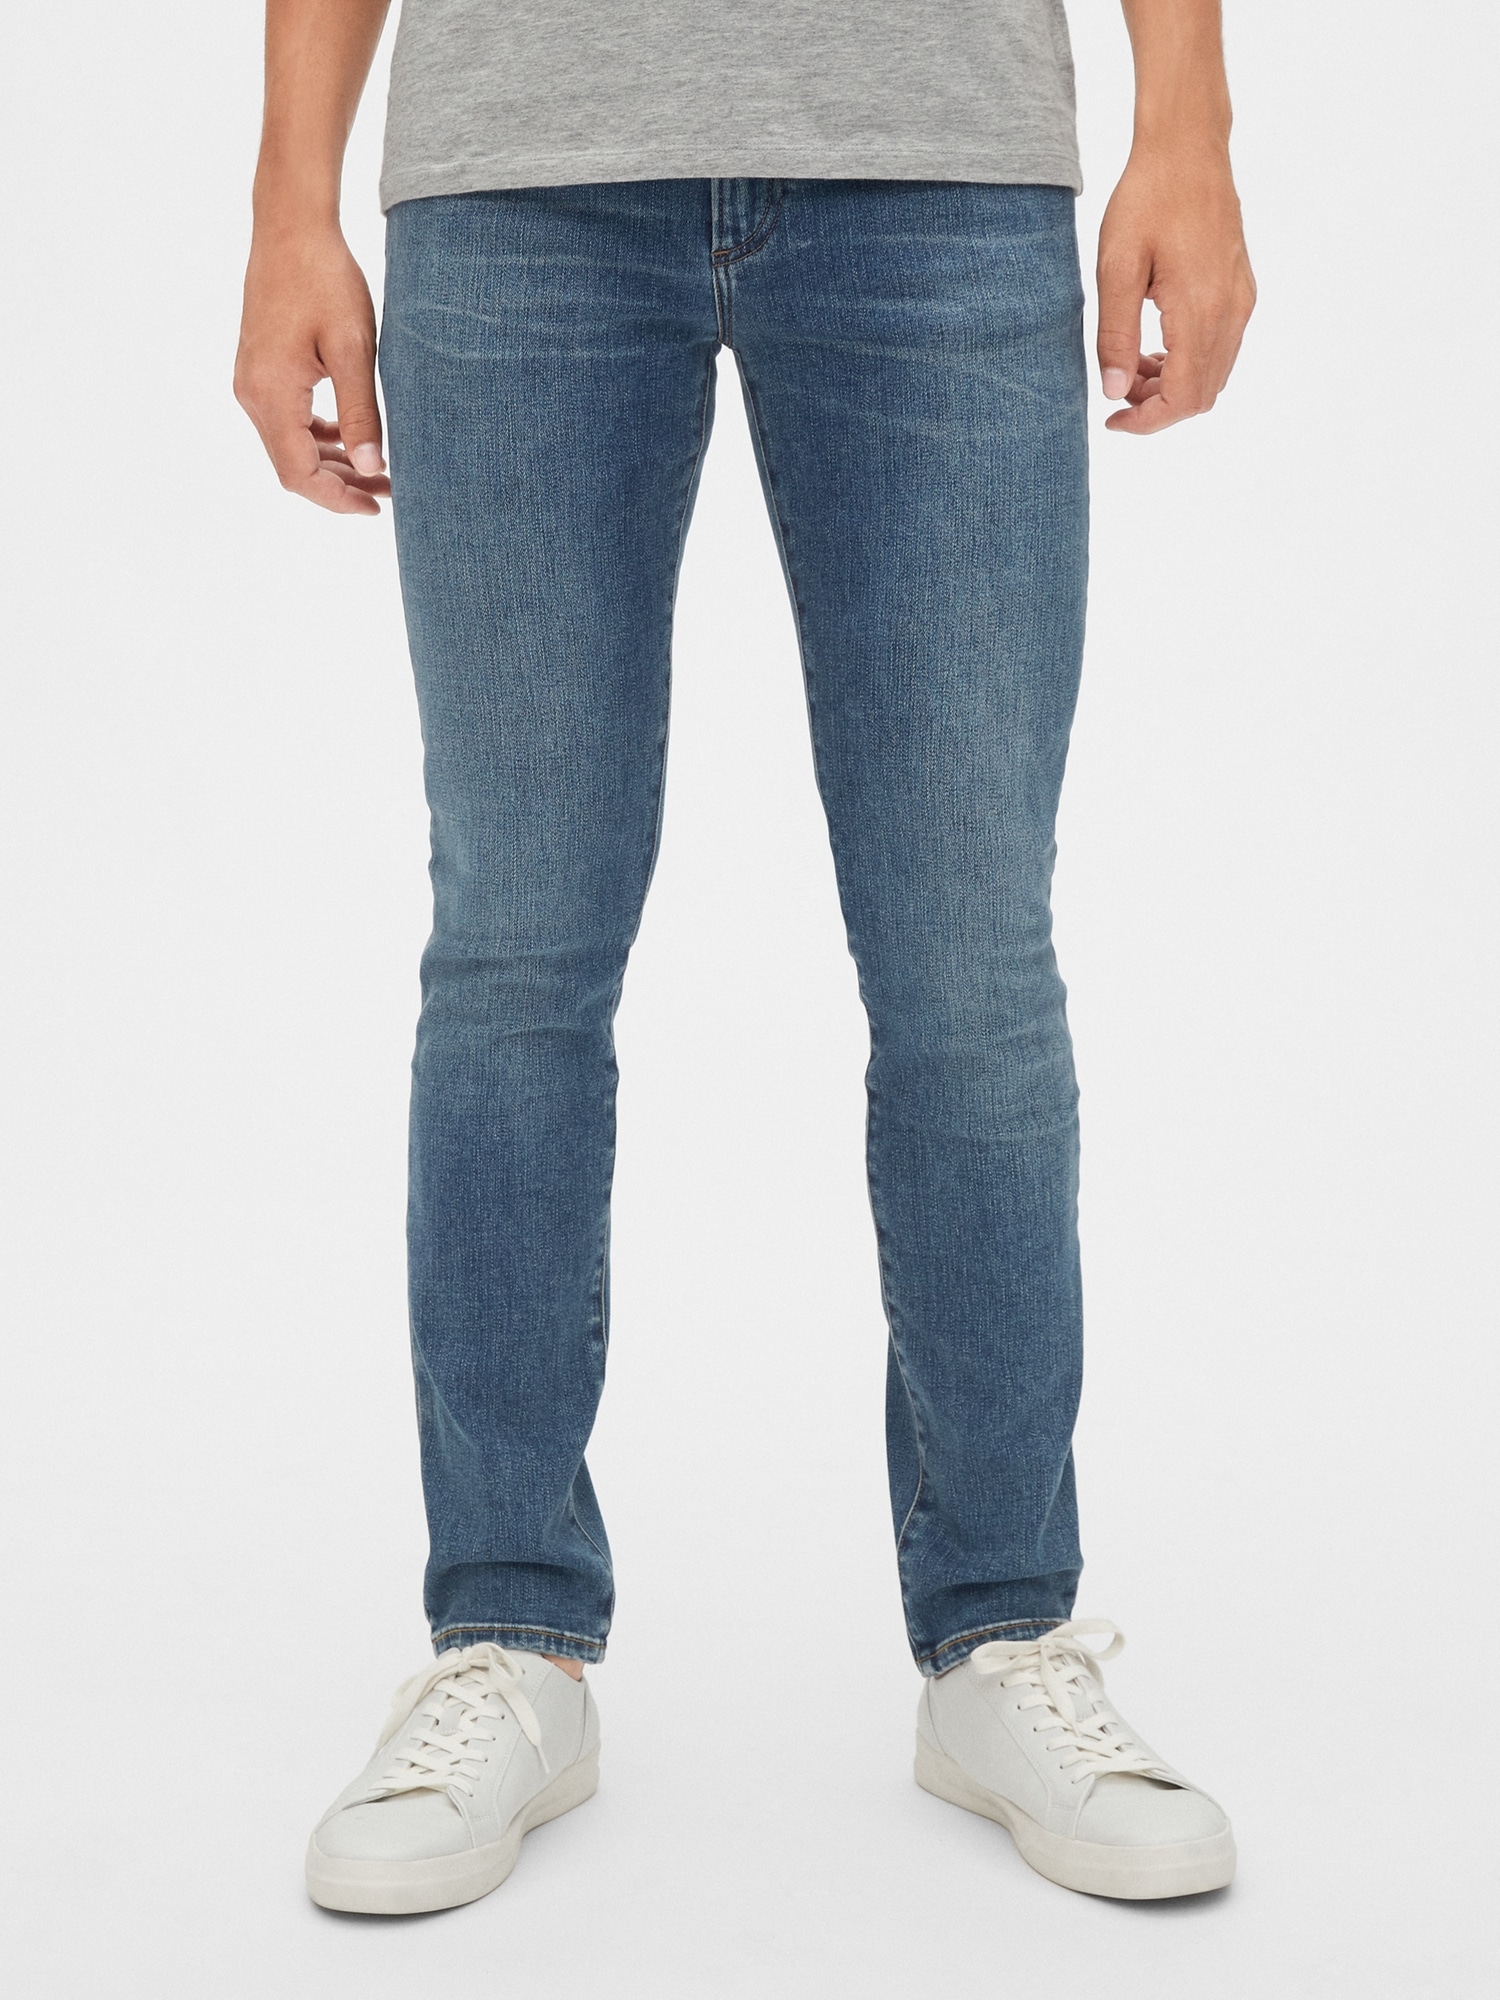 gap soft wear jeans